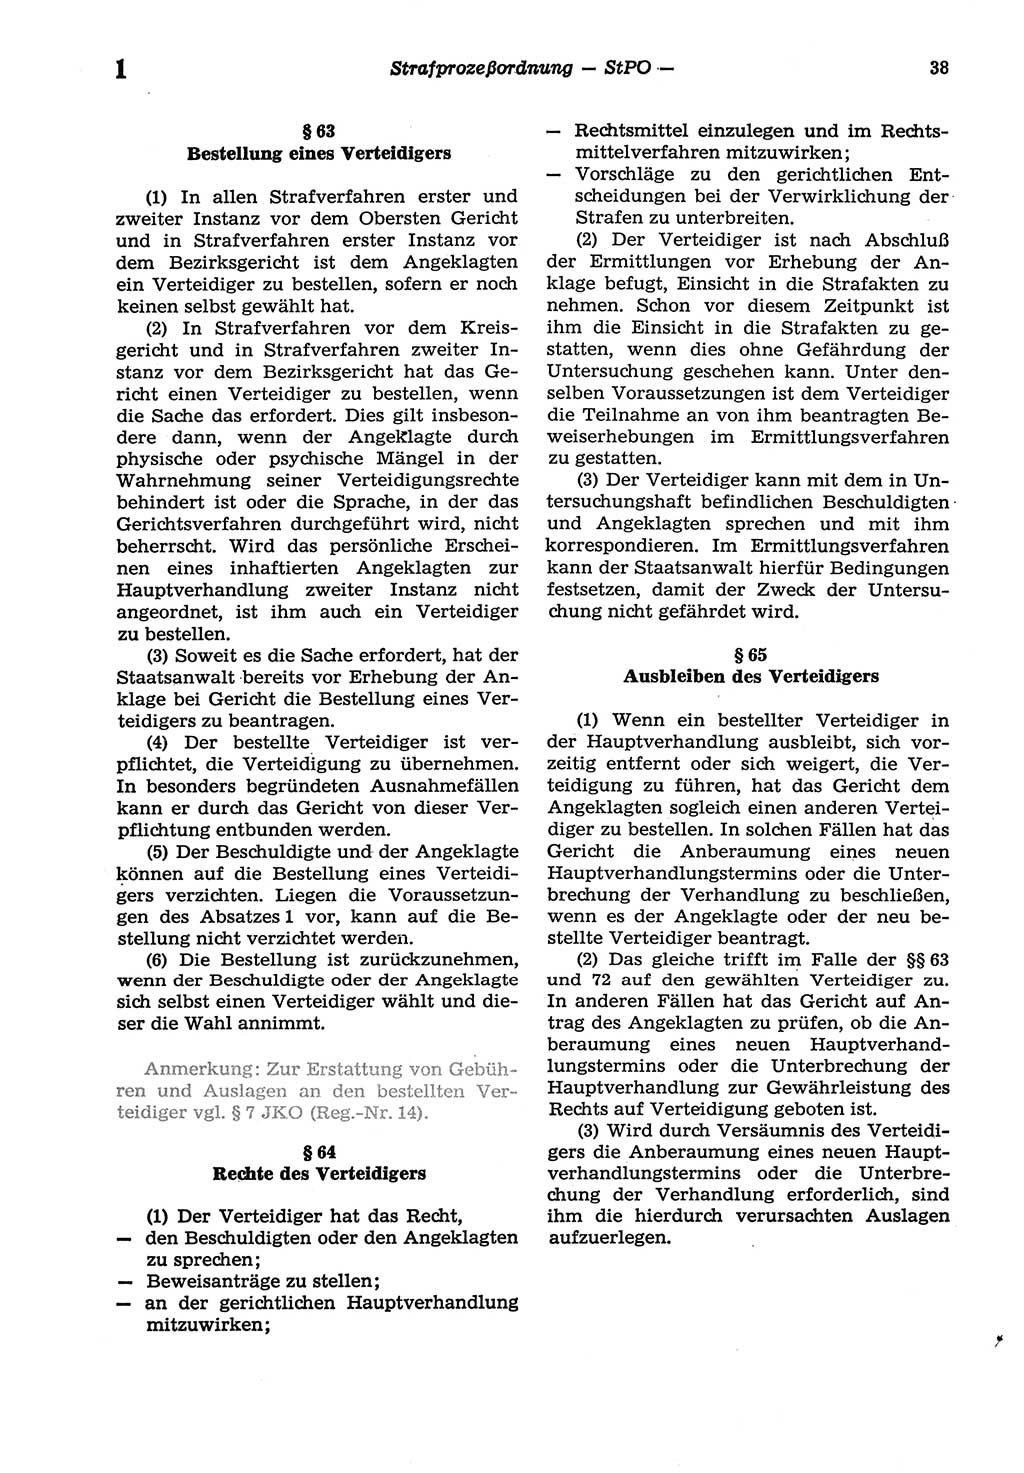 Strafprozeßordnung (StPO) der Deutschen Demokratischen Republik (DDR) sowie angrenzende Gesetze und Bestimmungen 1977, Seite 38 (StPO DDR Ges. Best. 1977, S. 38)